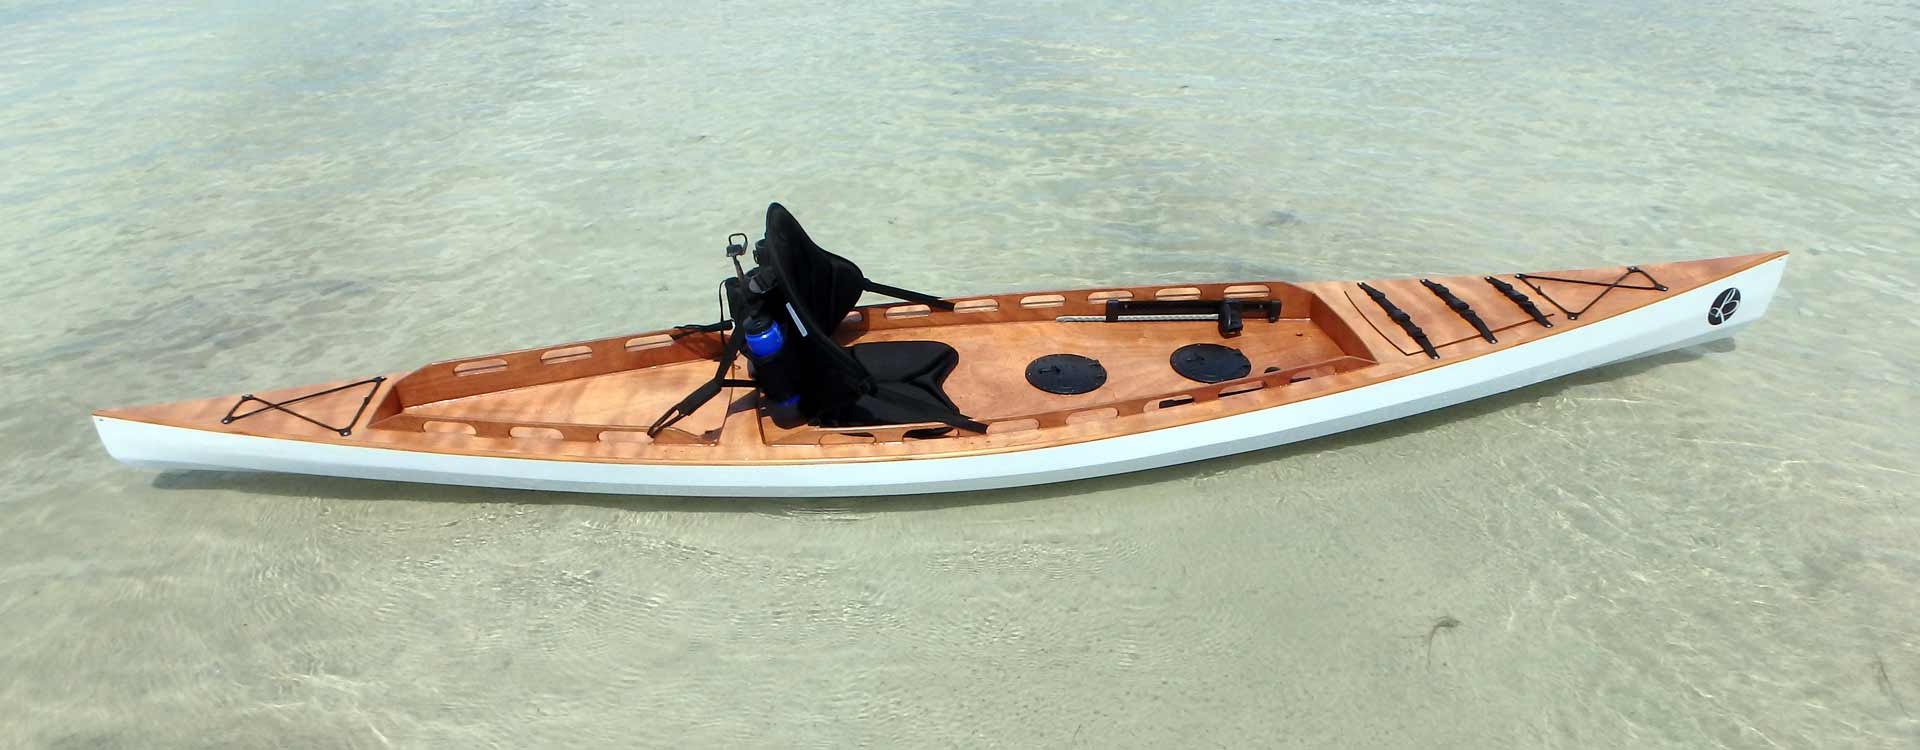 F1430 Sit On Top kayak Bedard Yacht Design